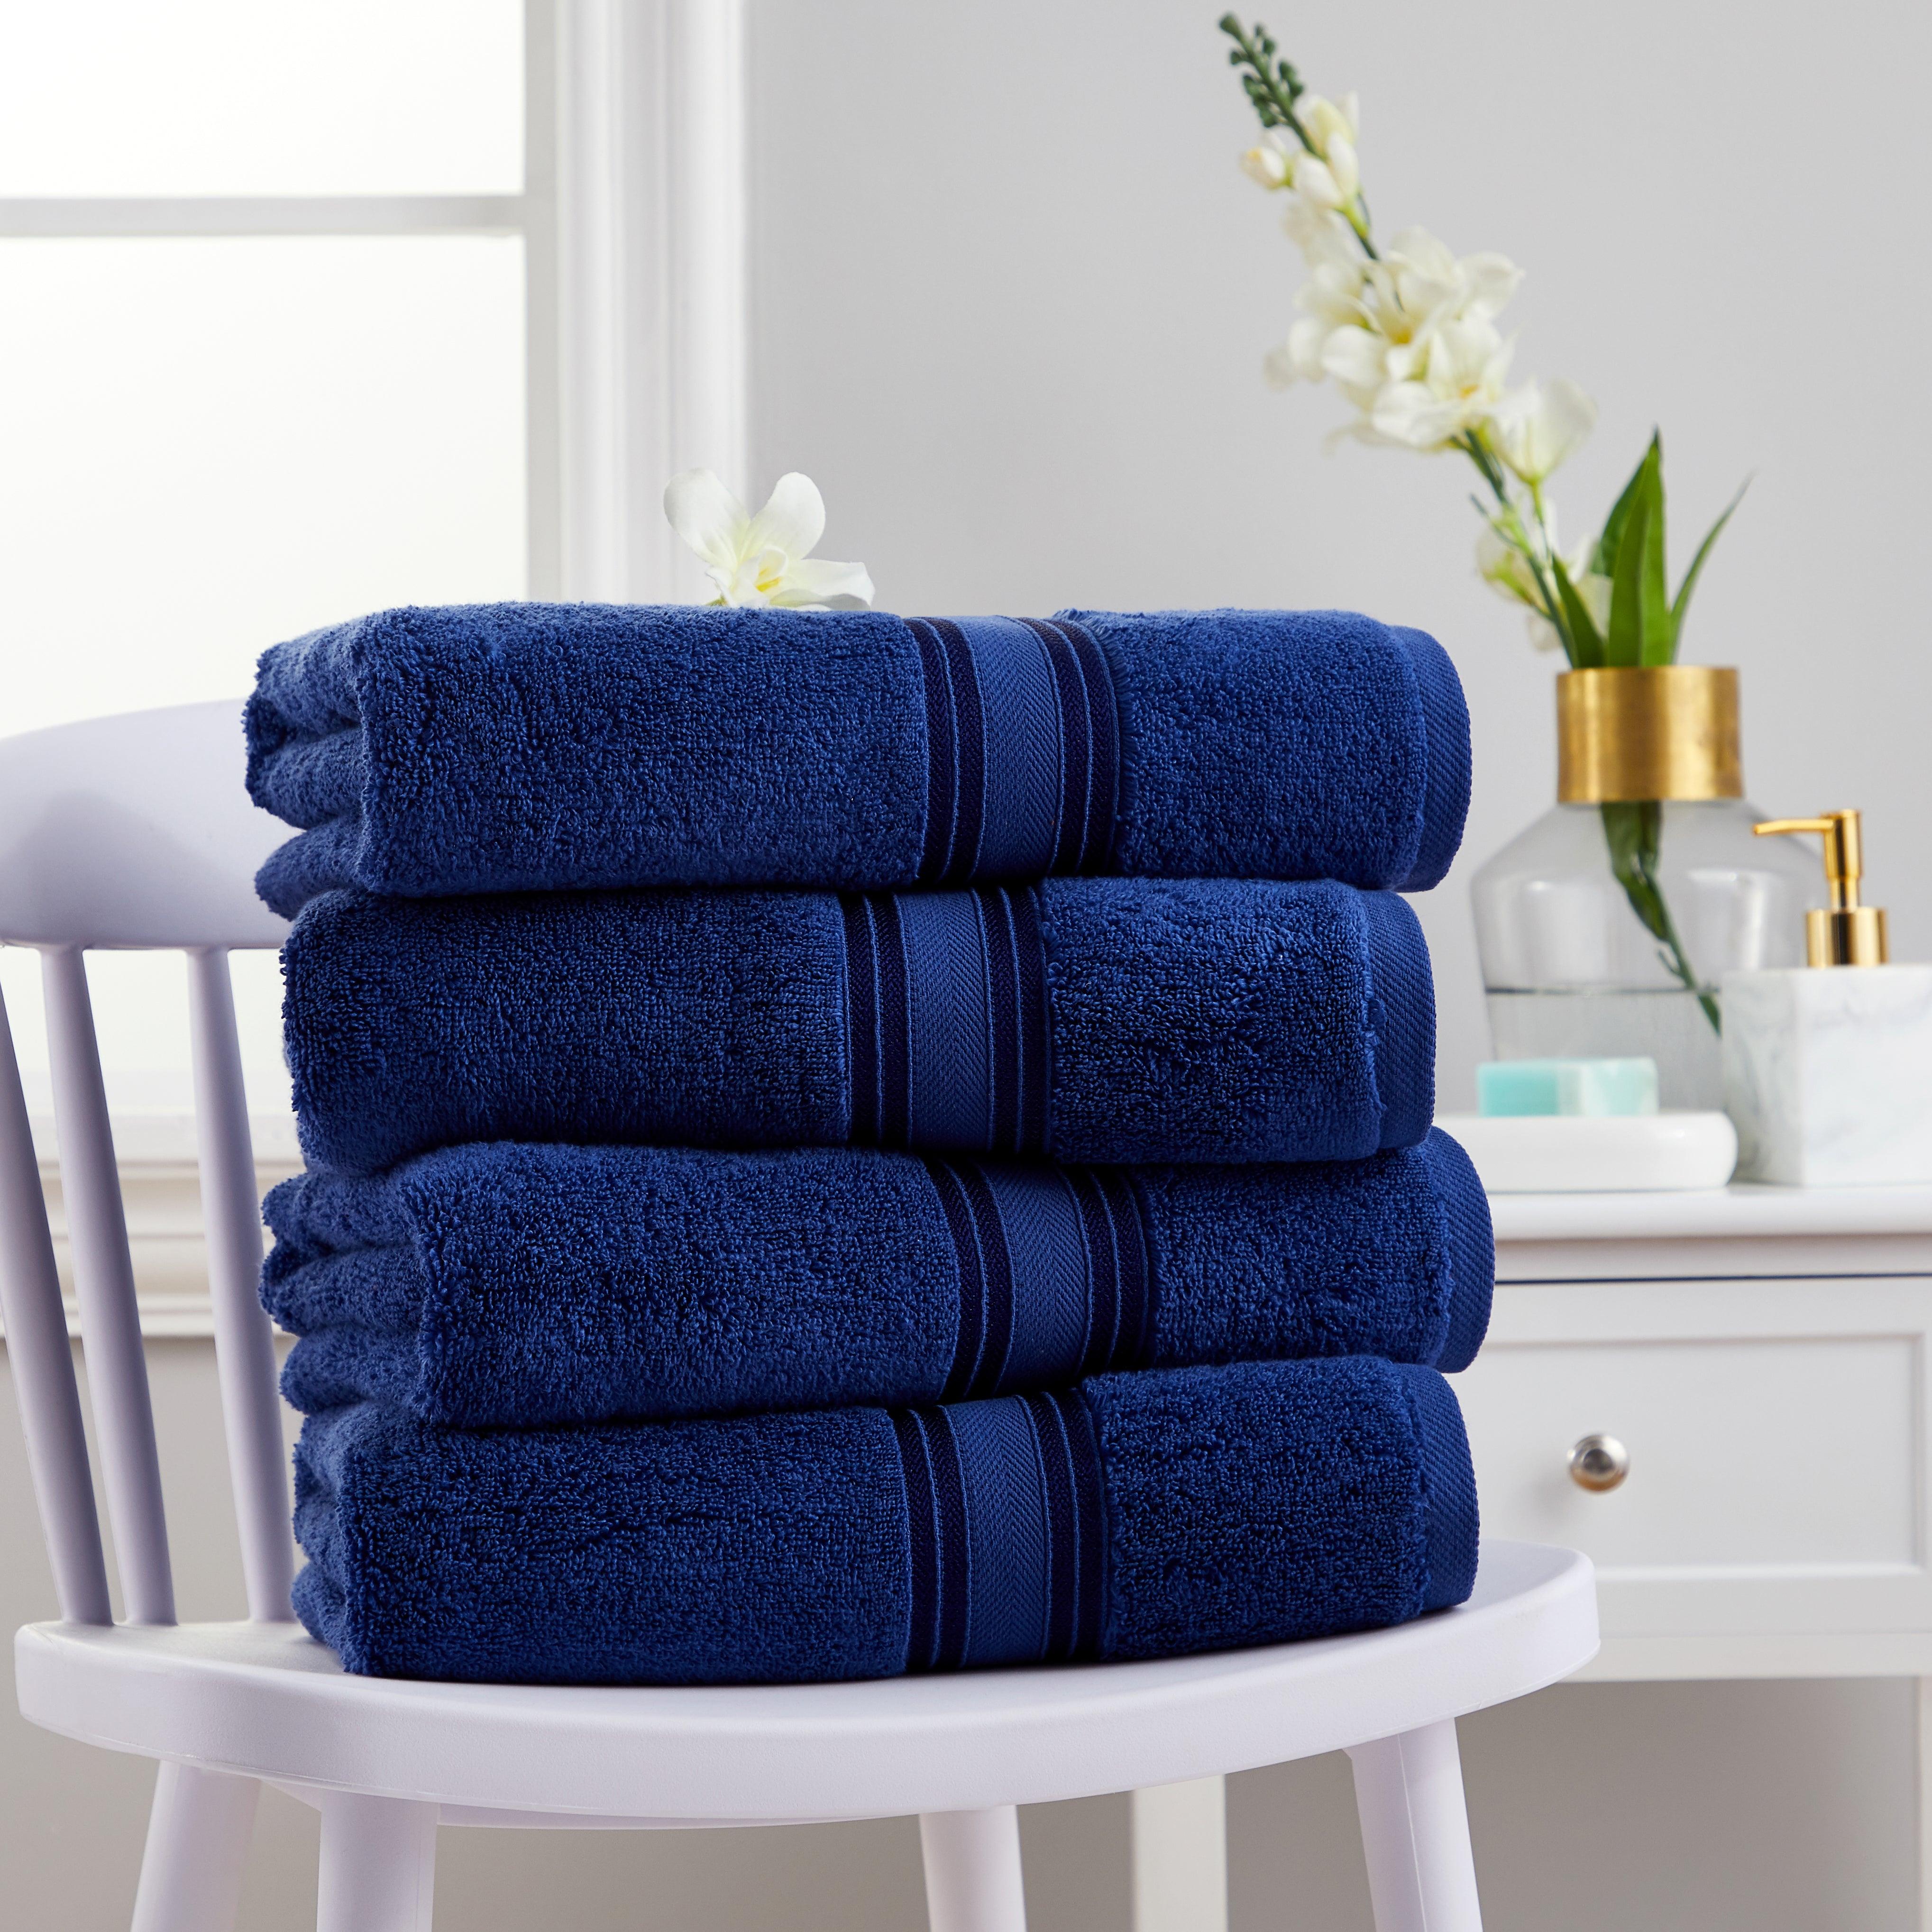 4 Piece Soft Cotton Bath Towel Set 100% Cotton | Spirit Linen - Navy Blue